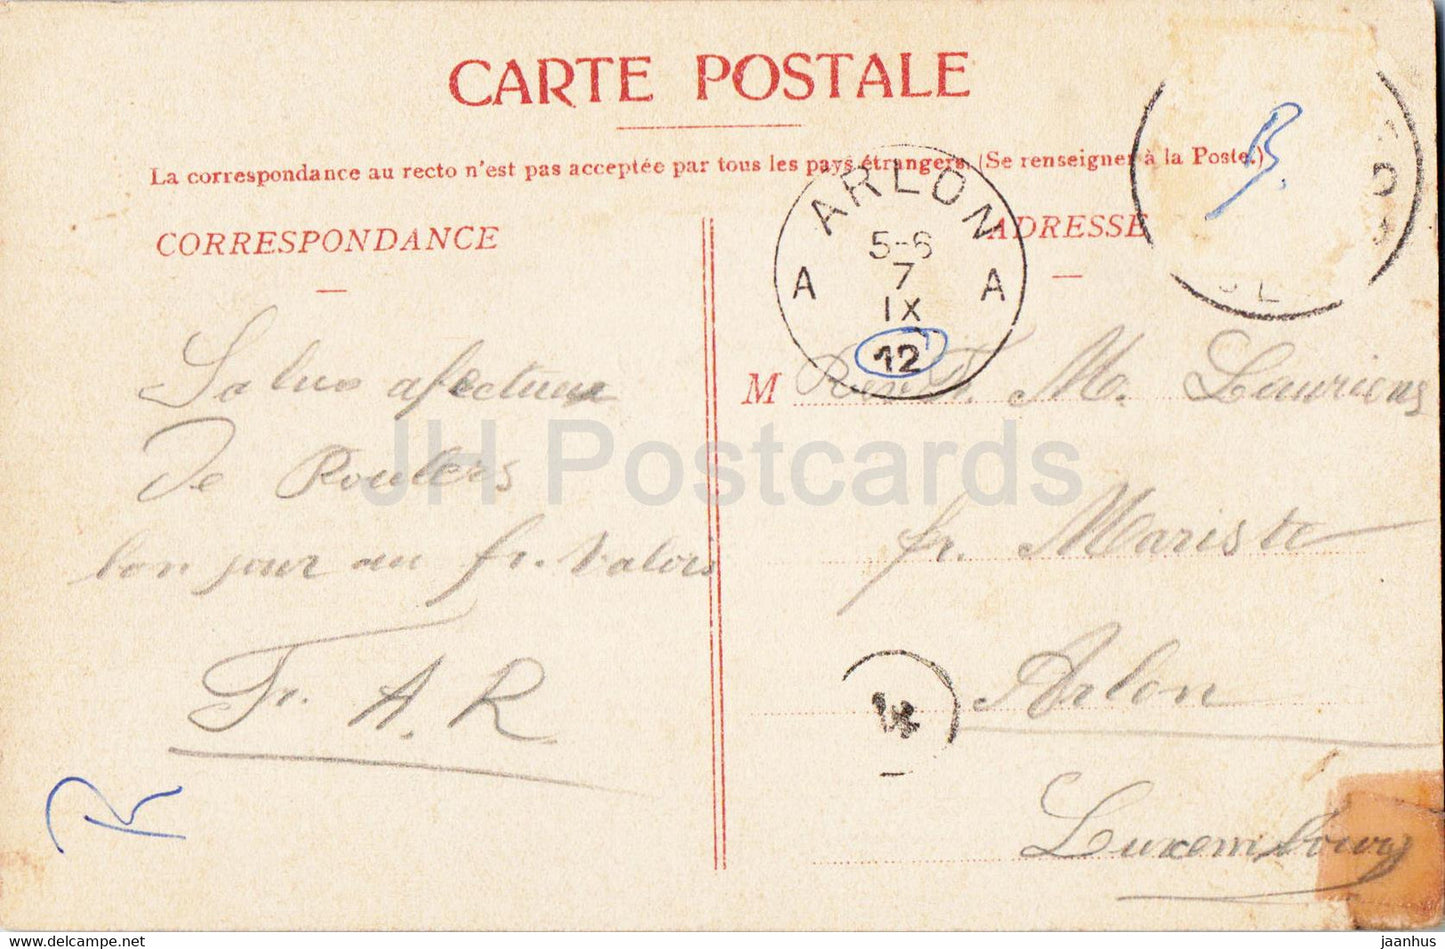 Roeselare - Rousselare Omstreken - Kasteel Graaf de Limbourg Stirum - Rumbeke - alte Postkarte - 1912 - Belgien - gebraucht